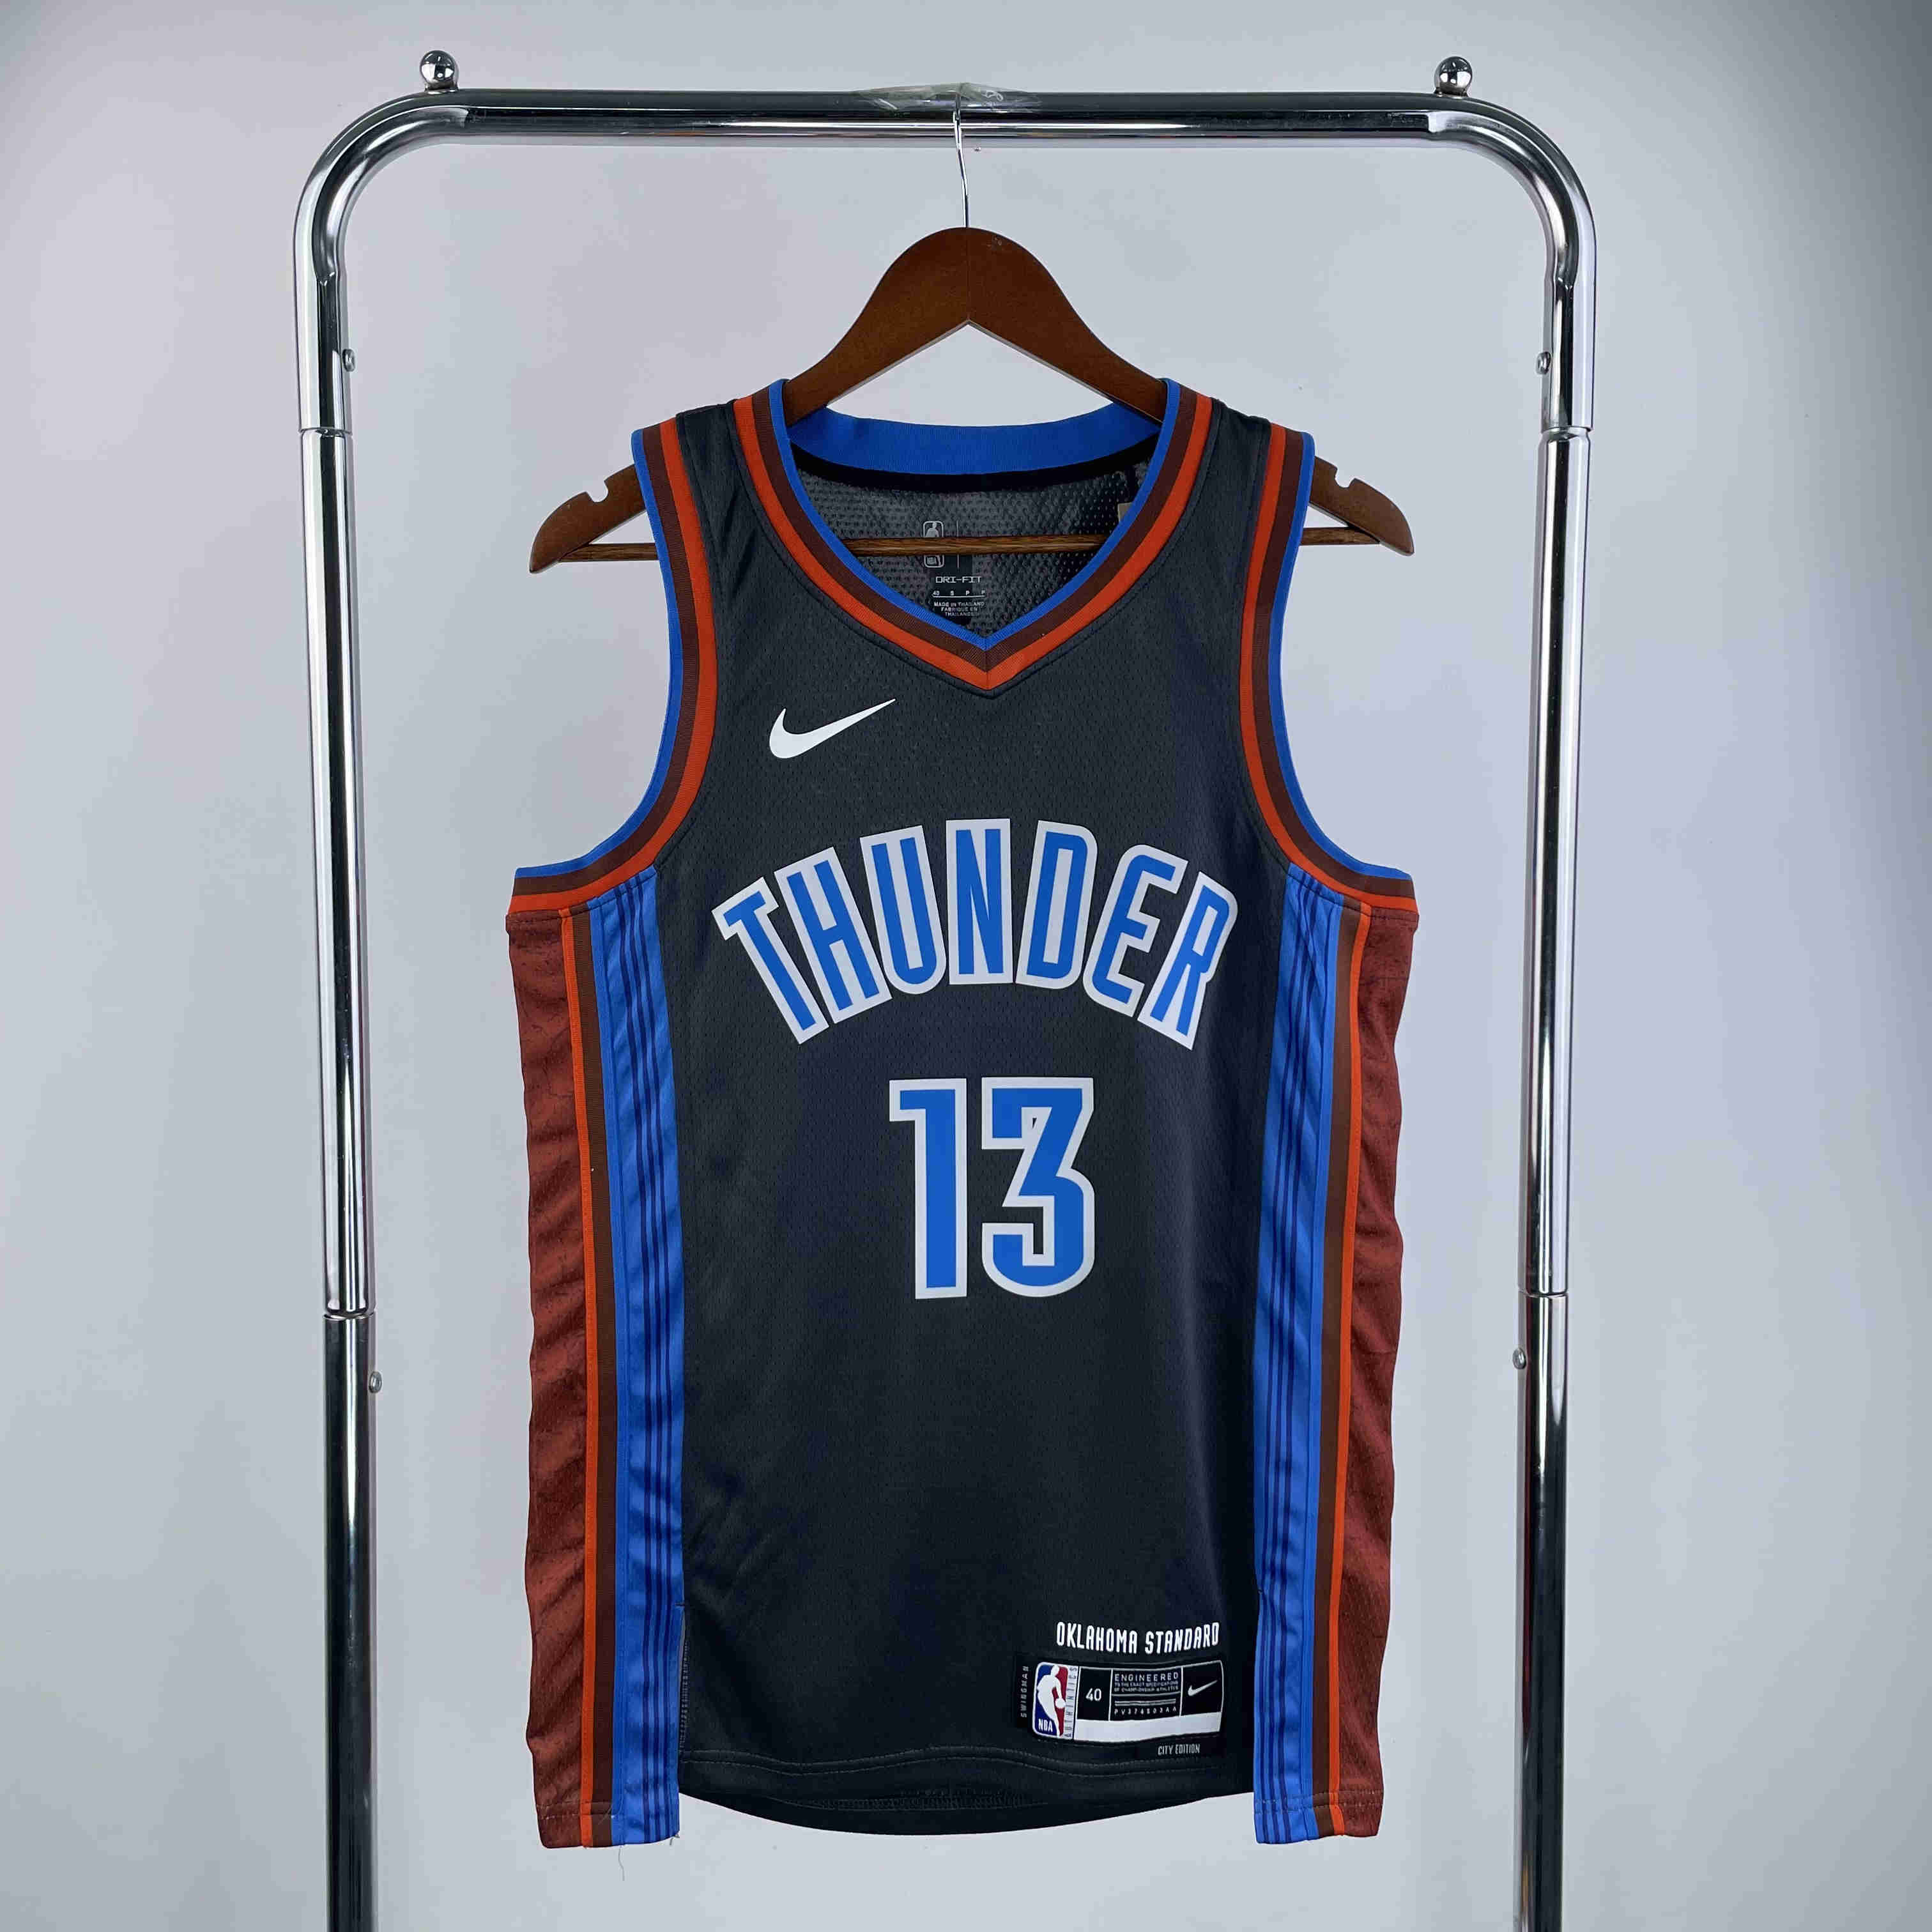 Oklahoma City Thunder  NBA Jersey  George 13